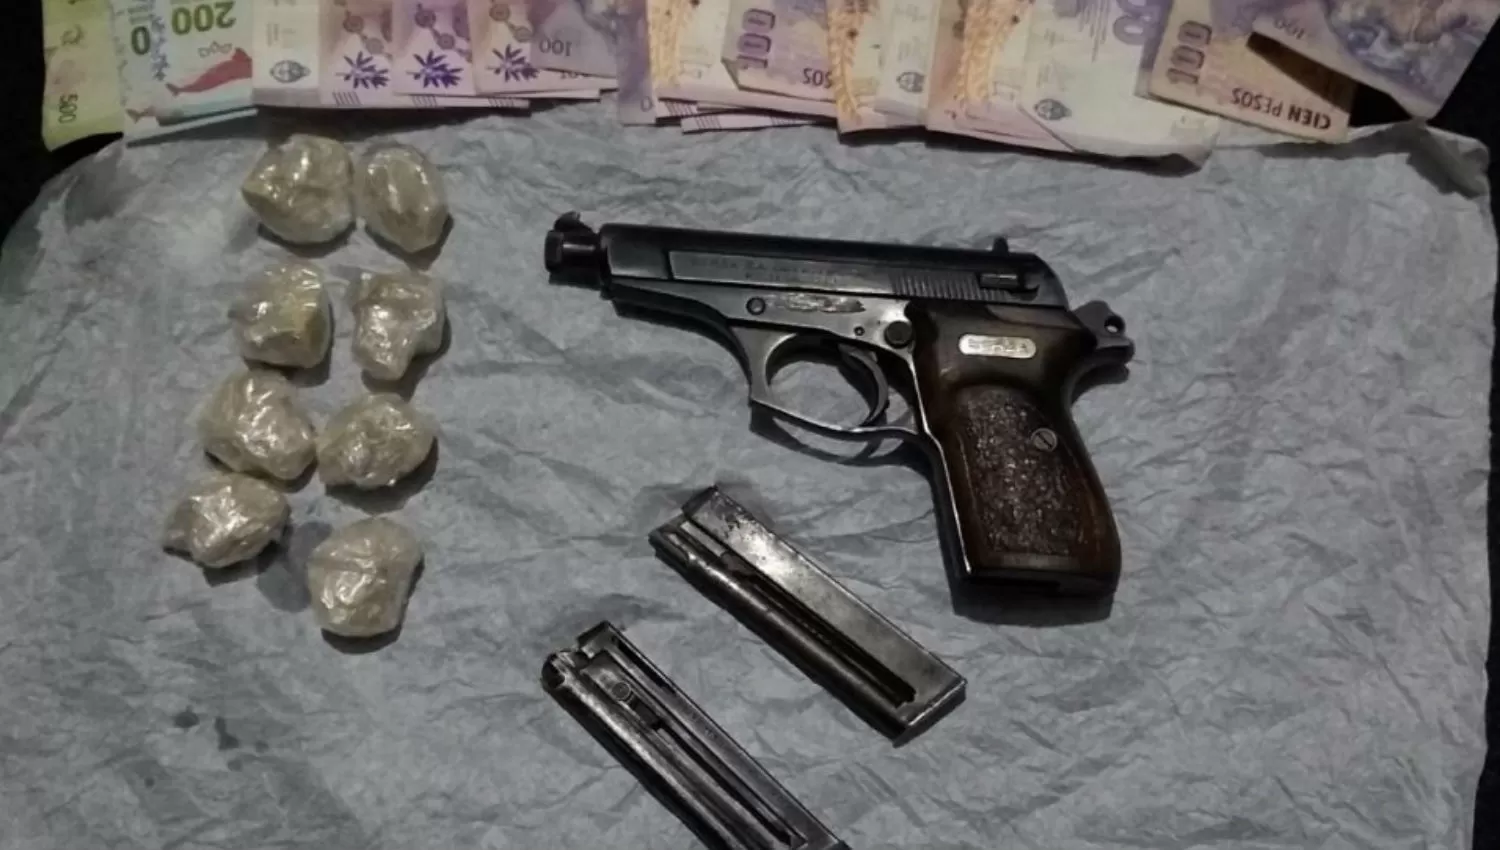 Narcomenudeo: drogas, armas y un detenido tras allanamientos en Alderetes